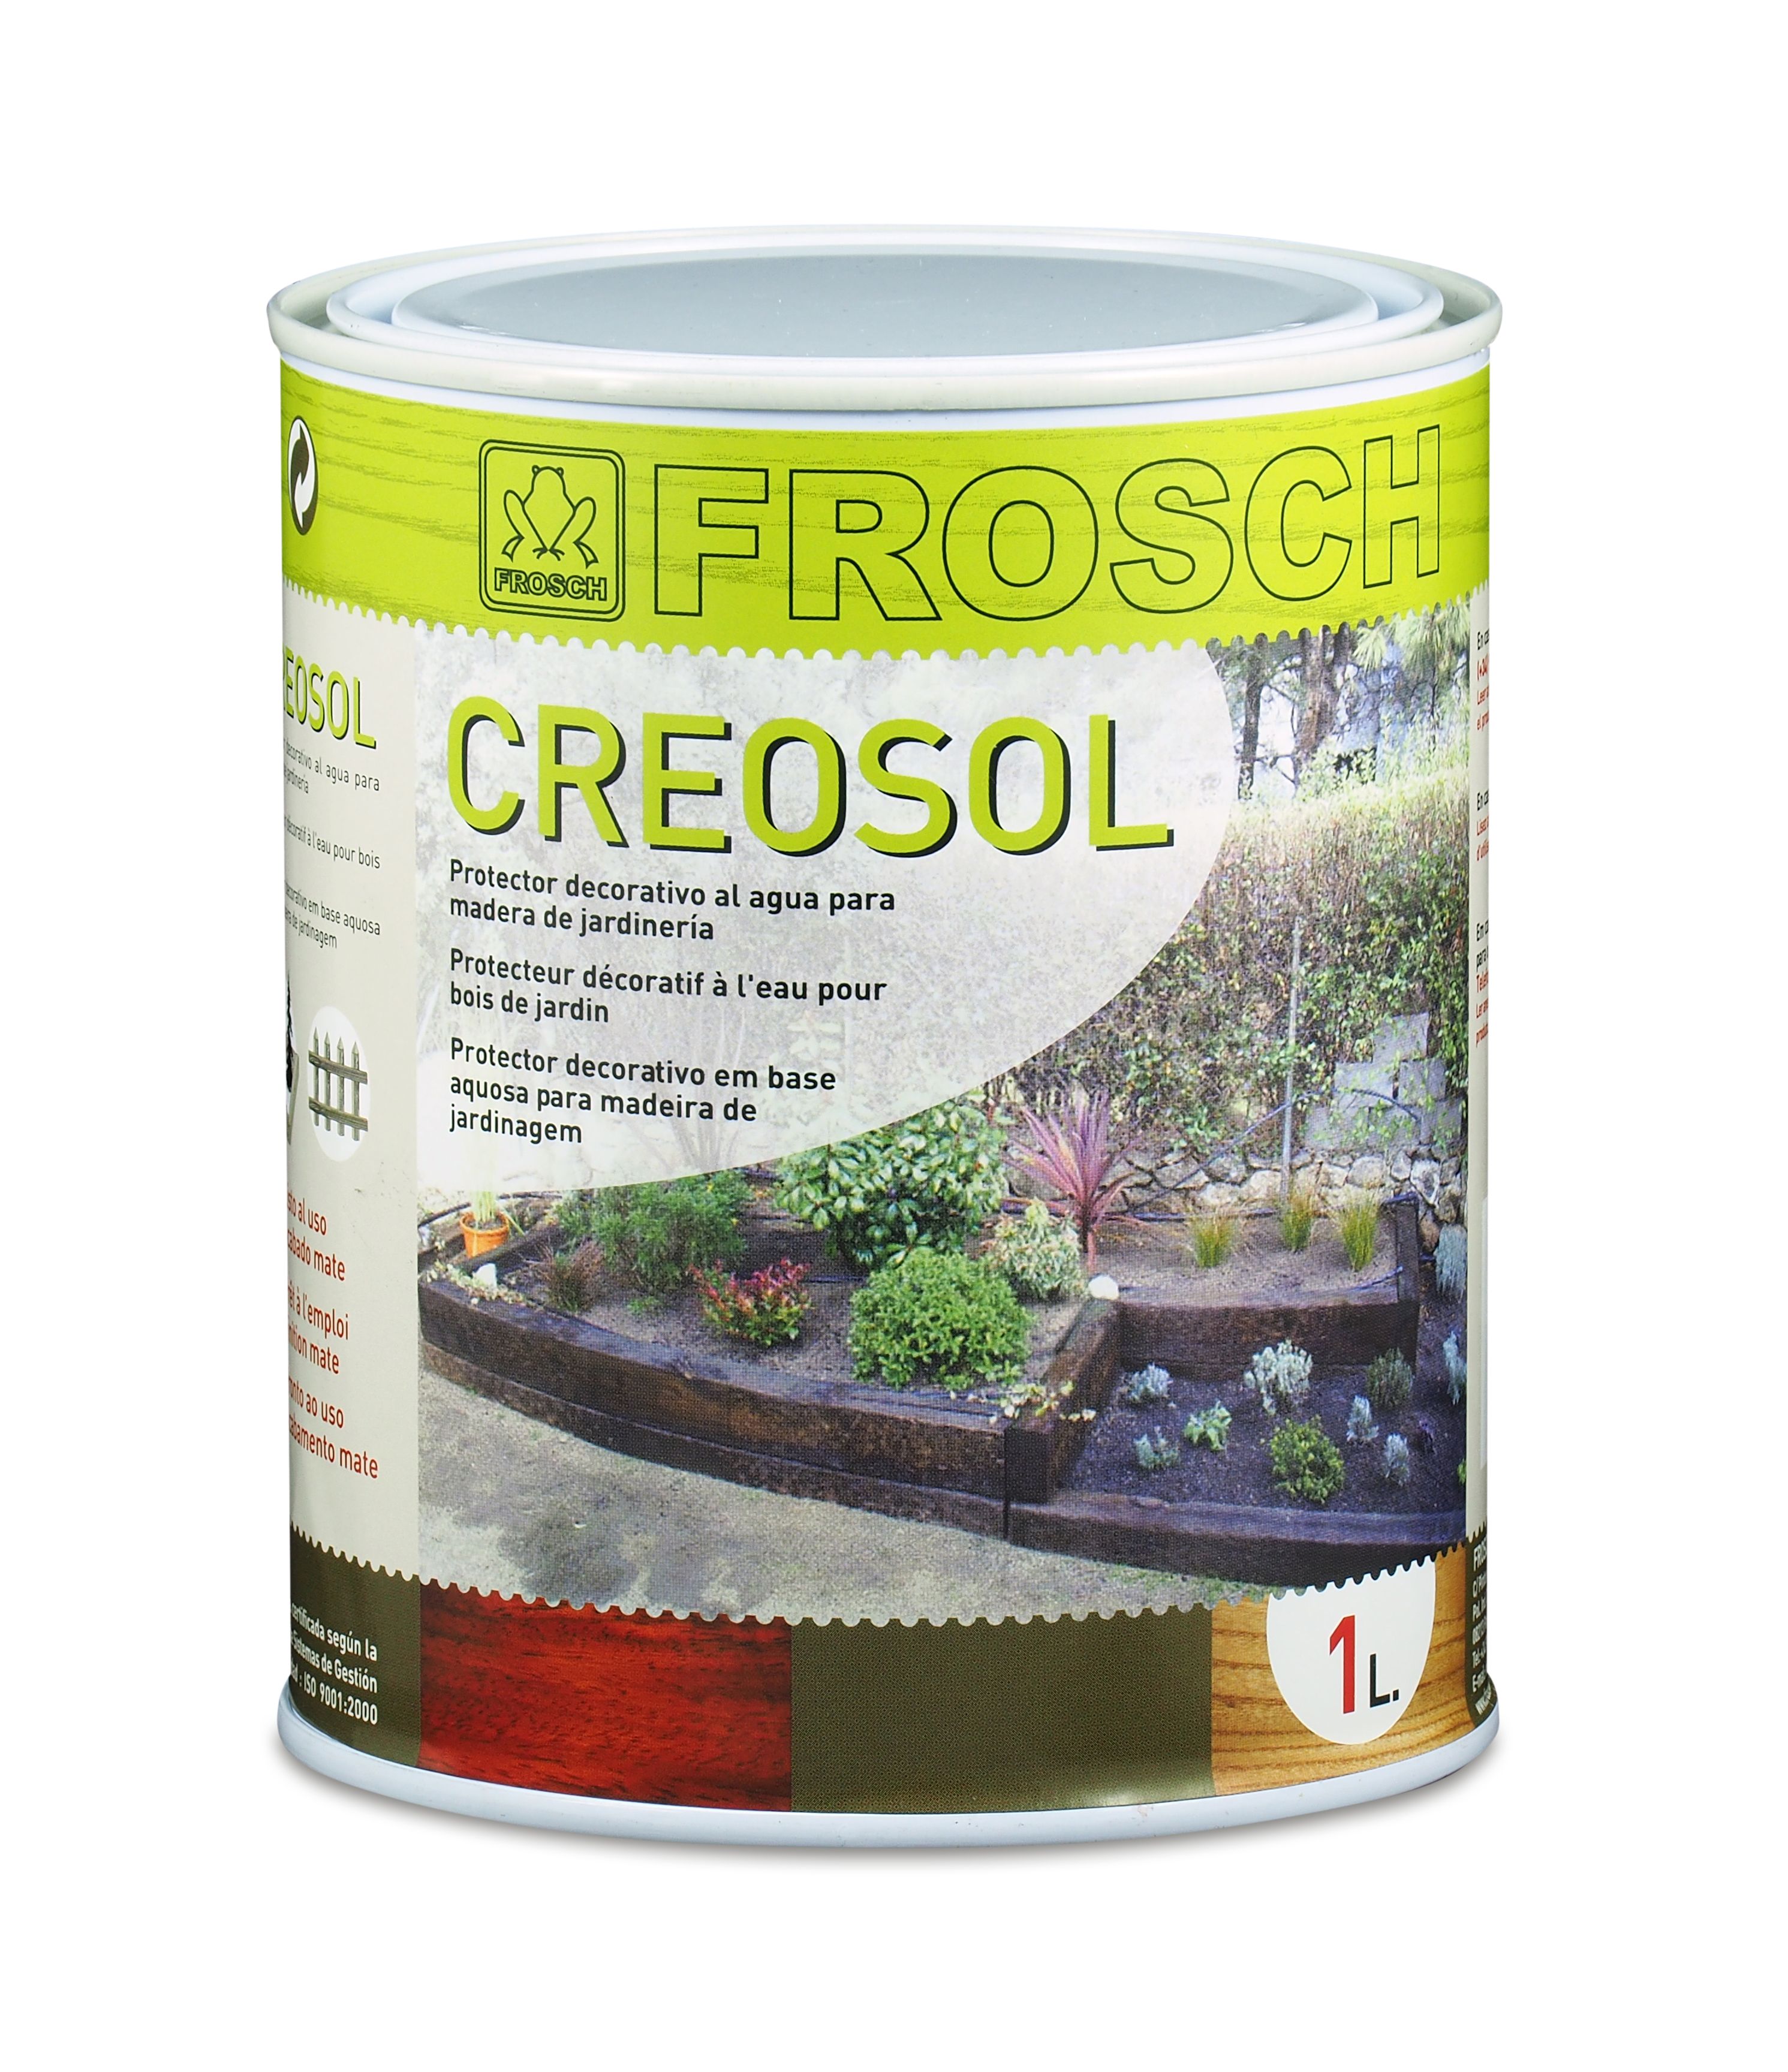 Ponte de pie en su lugar genéticamente Repeler Creosol (FR 6328): Lasur decorativo para la madera del jardín